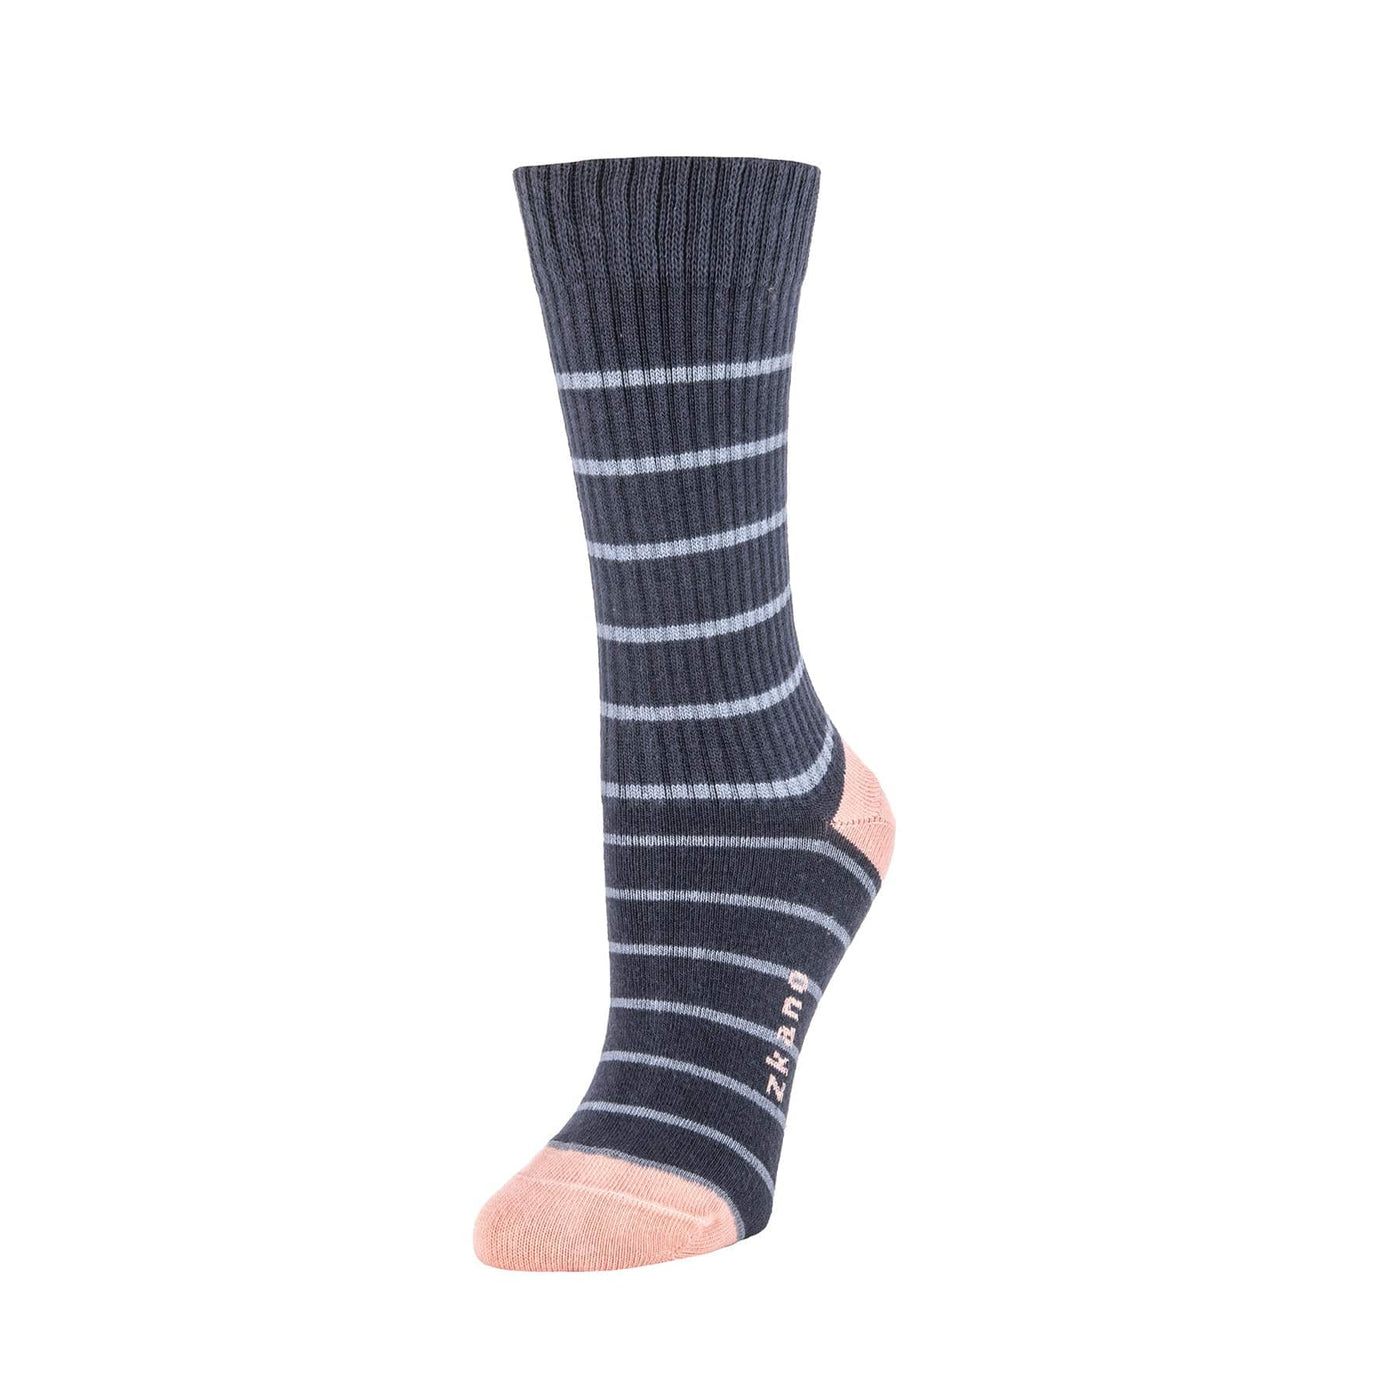 Zkano Crew Medium Voyager - Organic Cotton Heavy Rib Crew Socks - Indigo organic-socks-made-in-usa